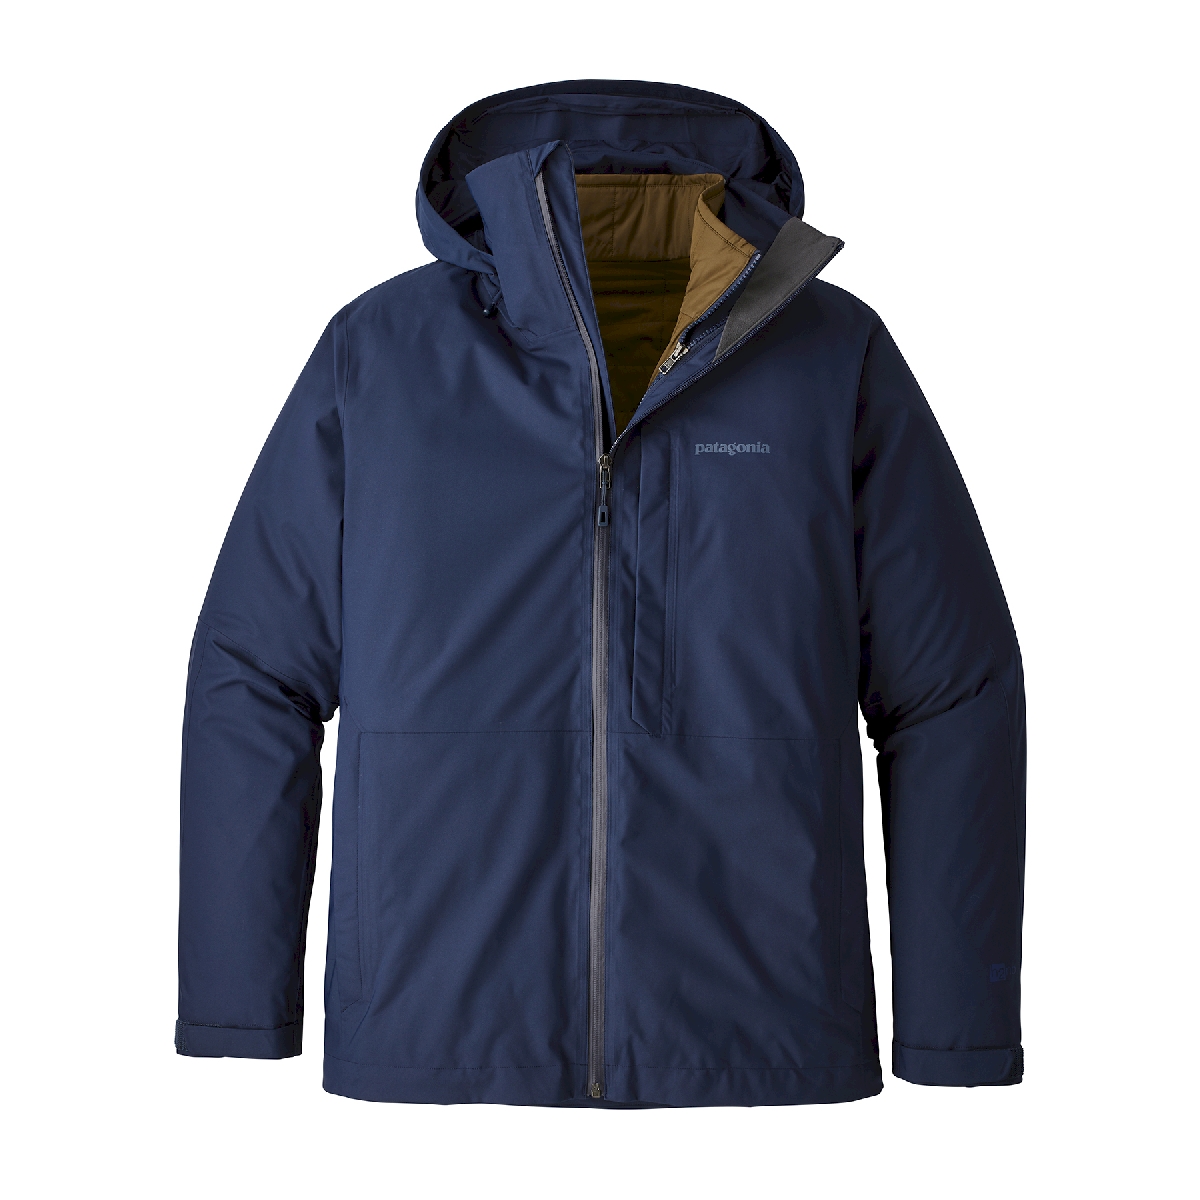 Patagonia - 3-in-1 Snowshot Jacket - Ski jacket - Men's